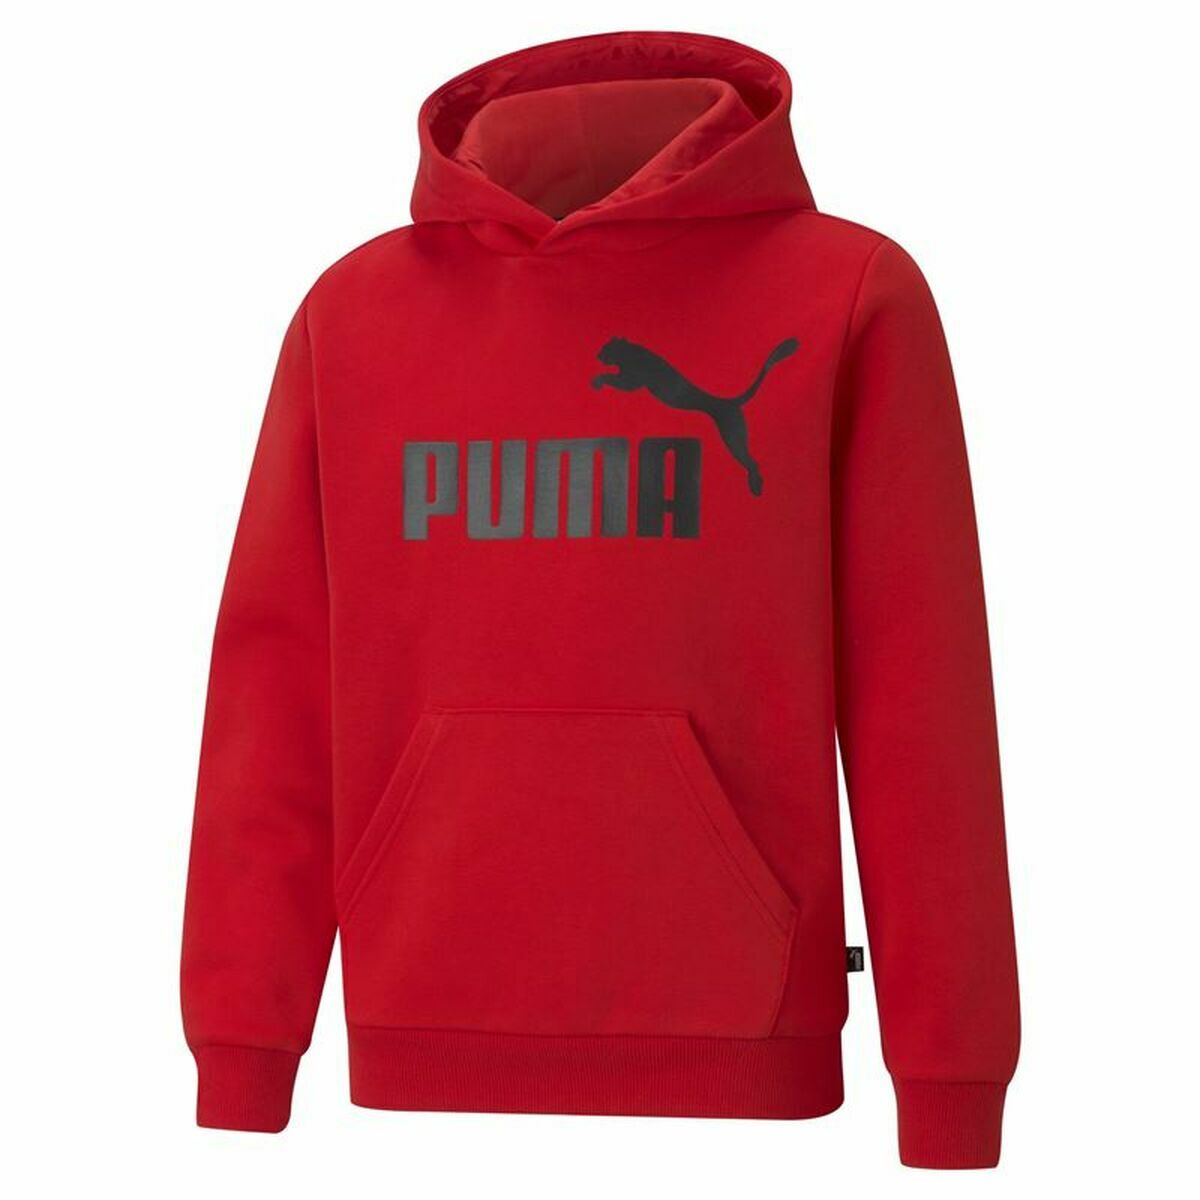 Kindersweater Puma Rood